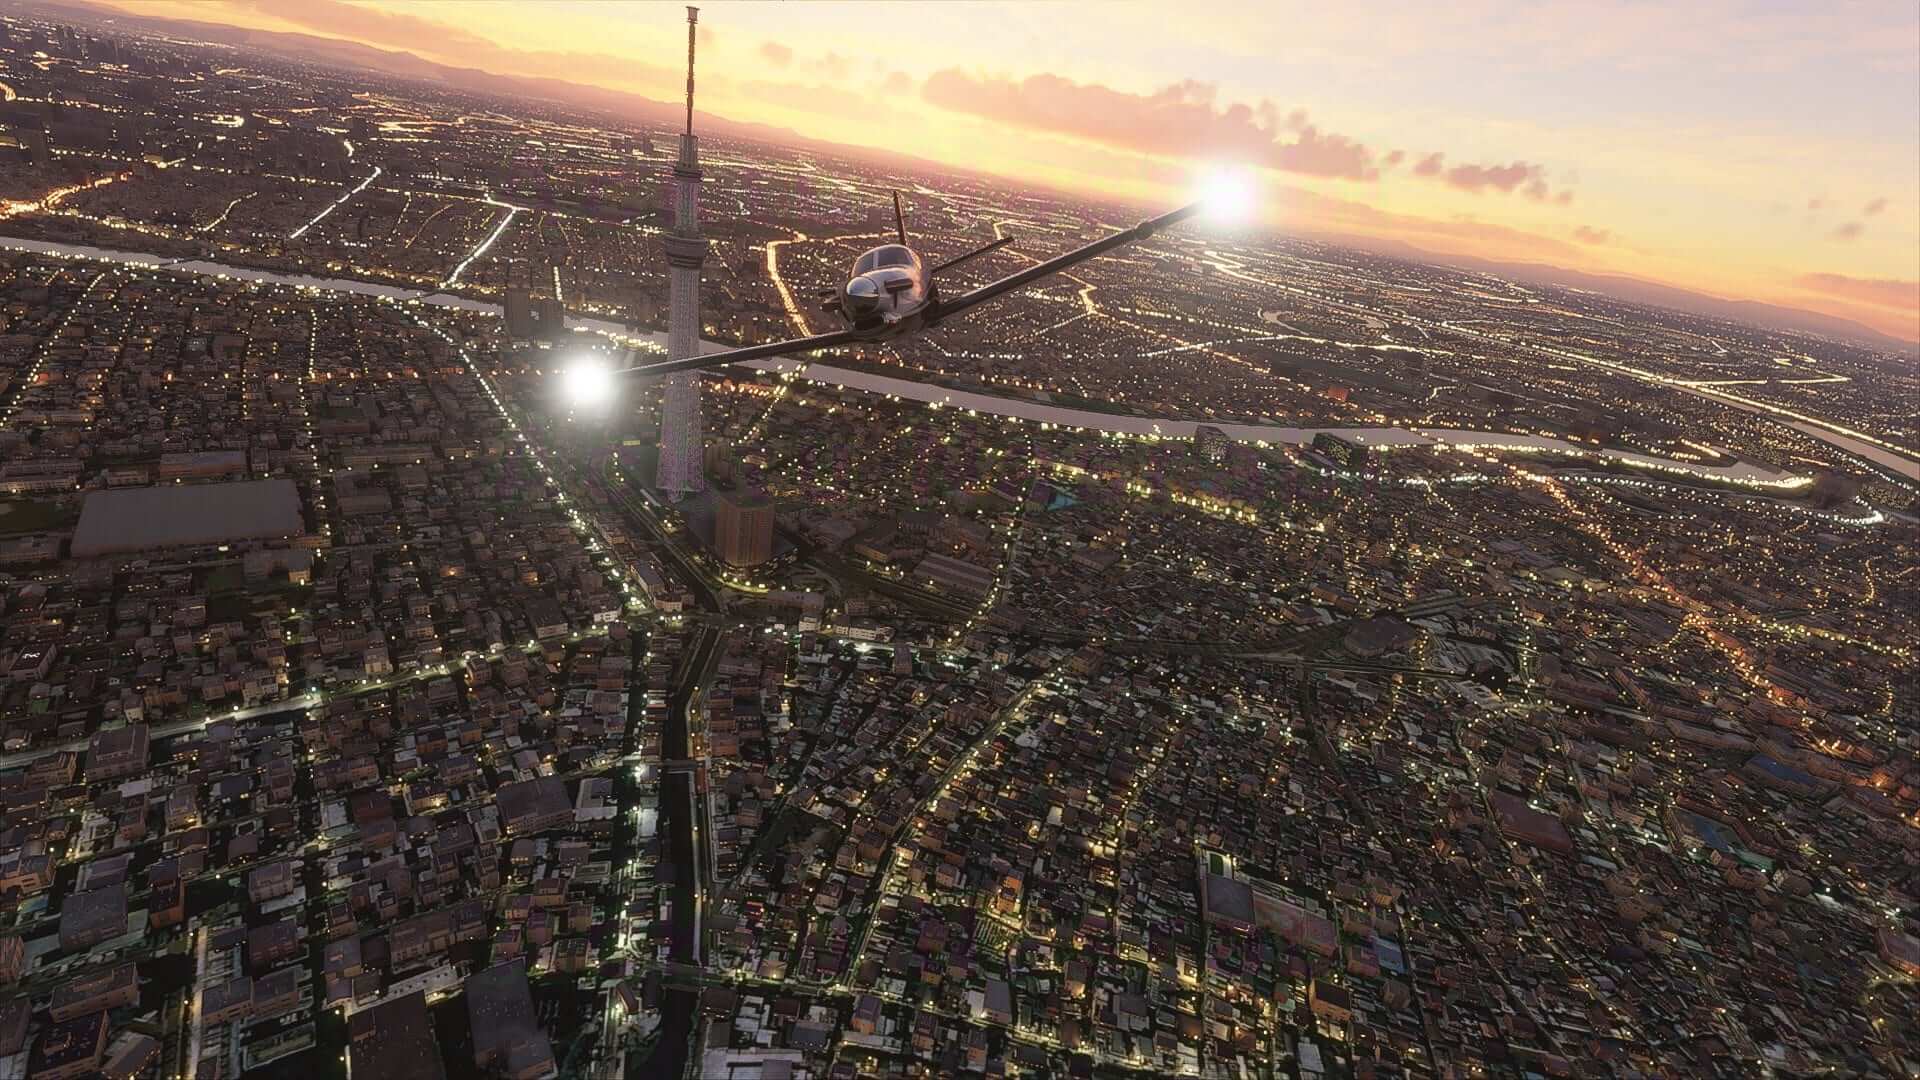 《微軟飛行模擬》公布新截圖 高空俯瞰城市與自然風光